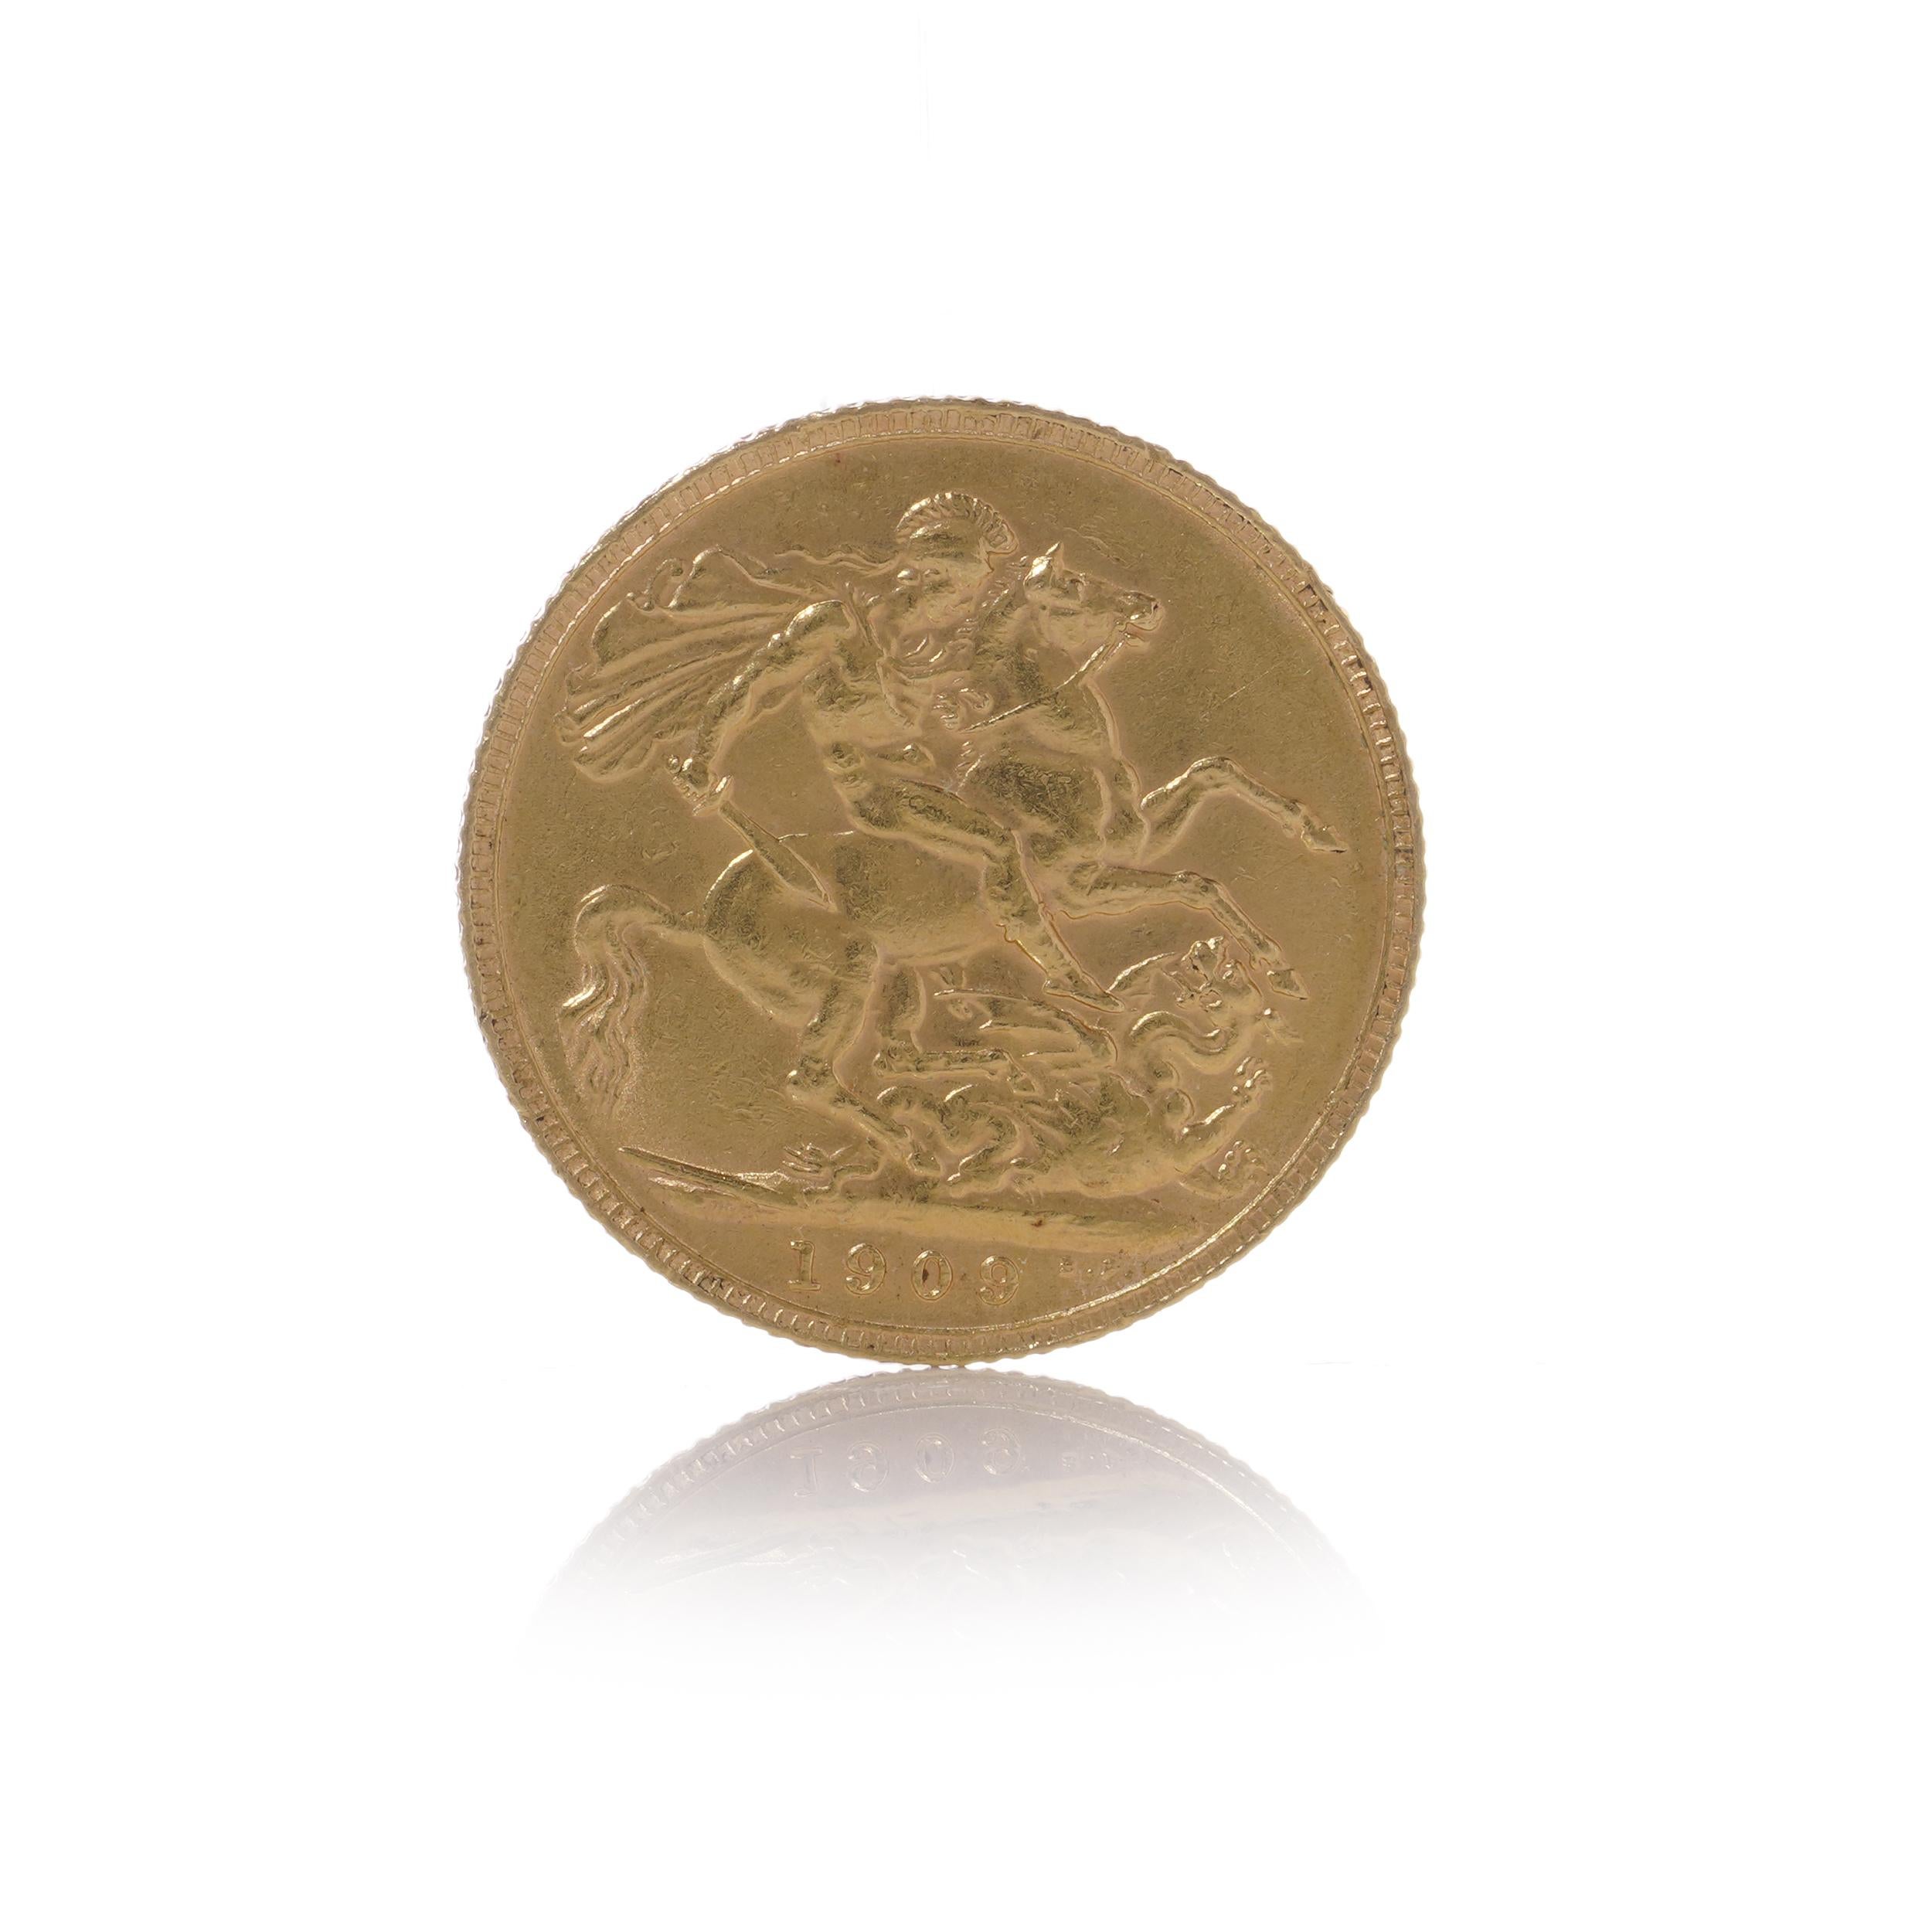 Gold-Sovereign von 1909 mit den Motiven von König Edward VII. und George & Dragon. Die Münze wird in einer Kunststoffkapsel geliefert. Das Münzzeichen M steht für die Münzanstalt in Melbourne, Australien.

Hersteller: Königliche Münze

Gewicht